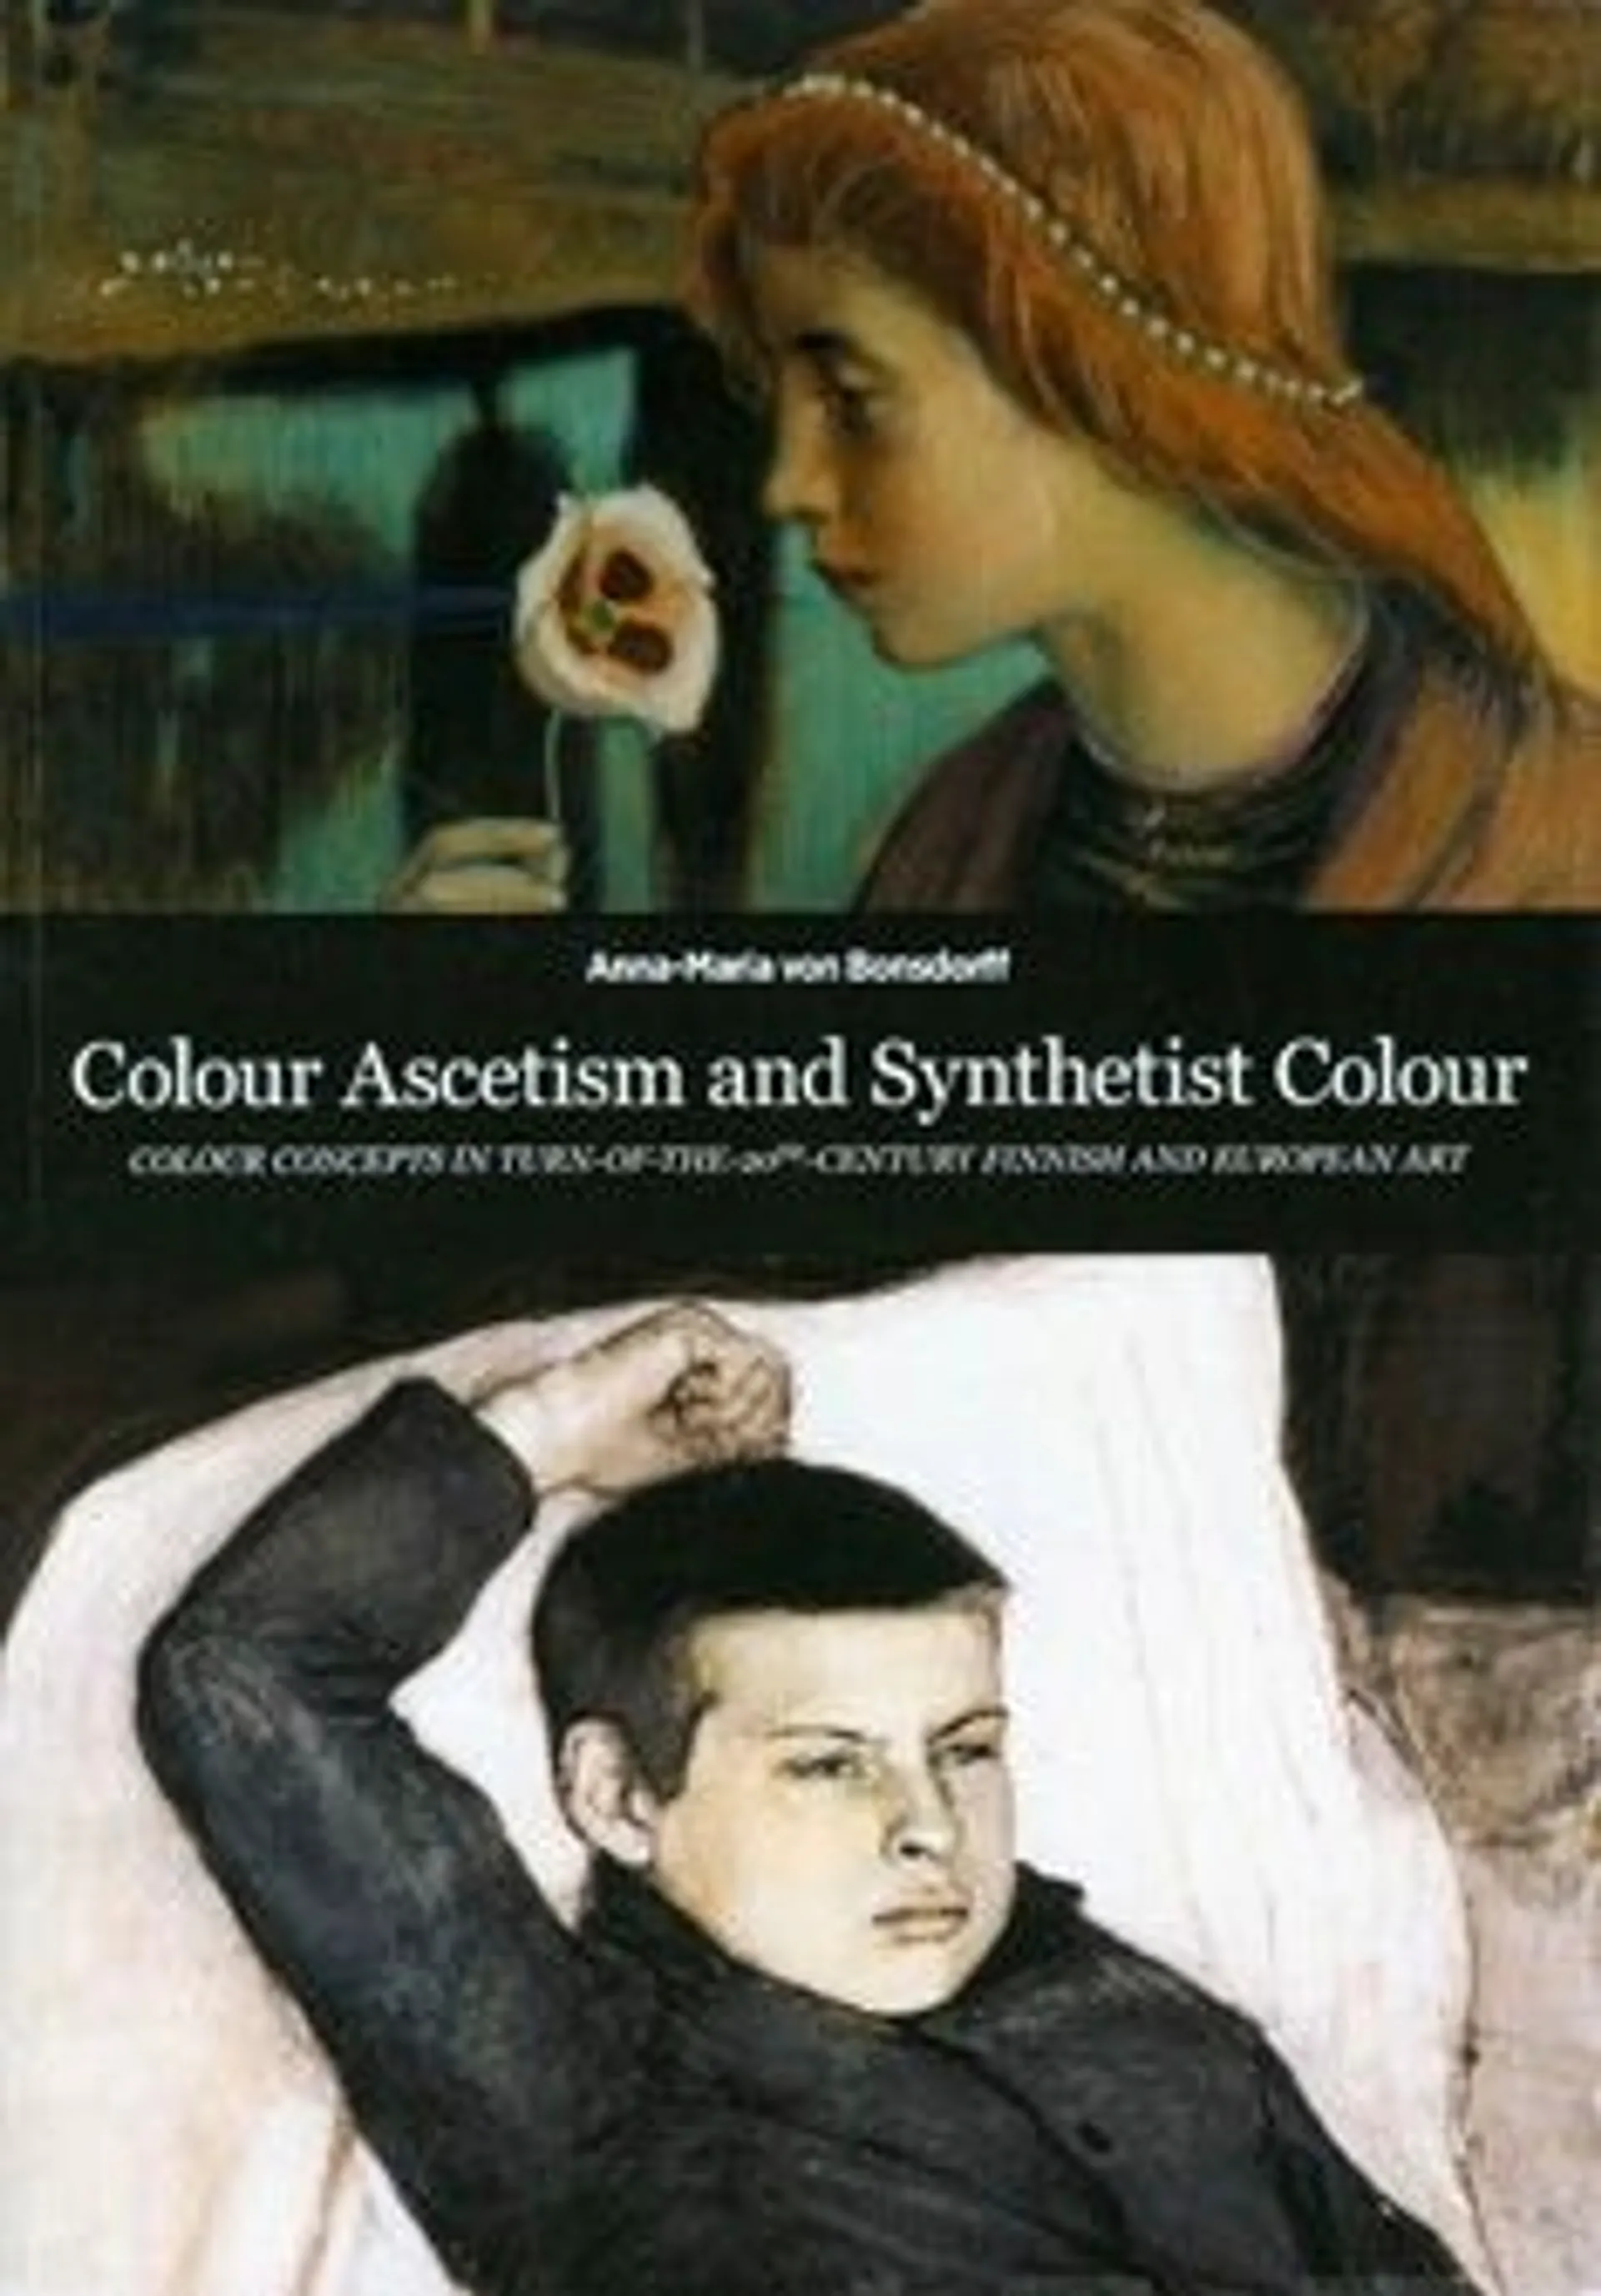 Bonsdorff von, Colour Ascetism and Synthetist Colour